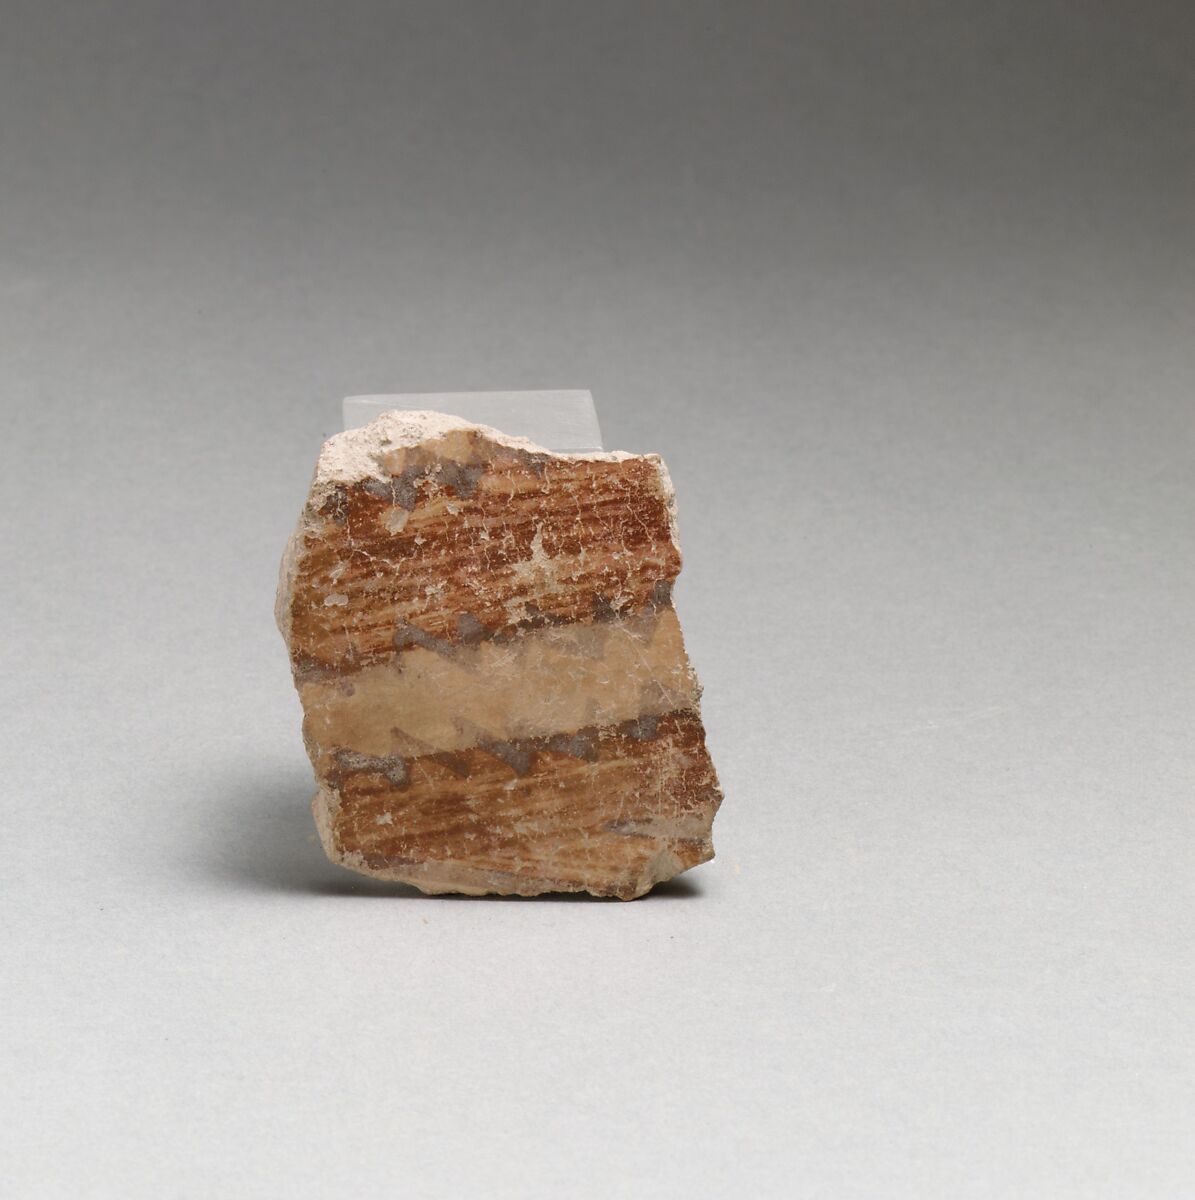 Terracotta vessel fragment, Terracotta, Greek Neolithic 